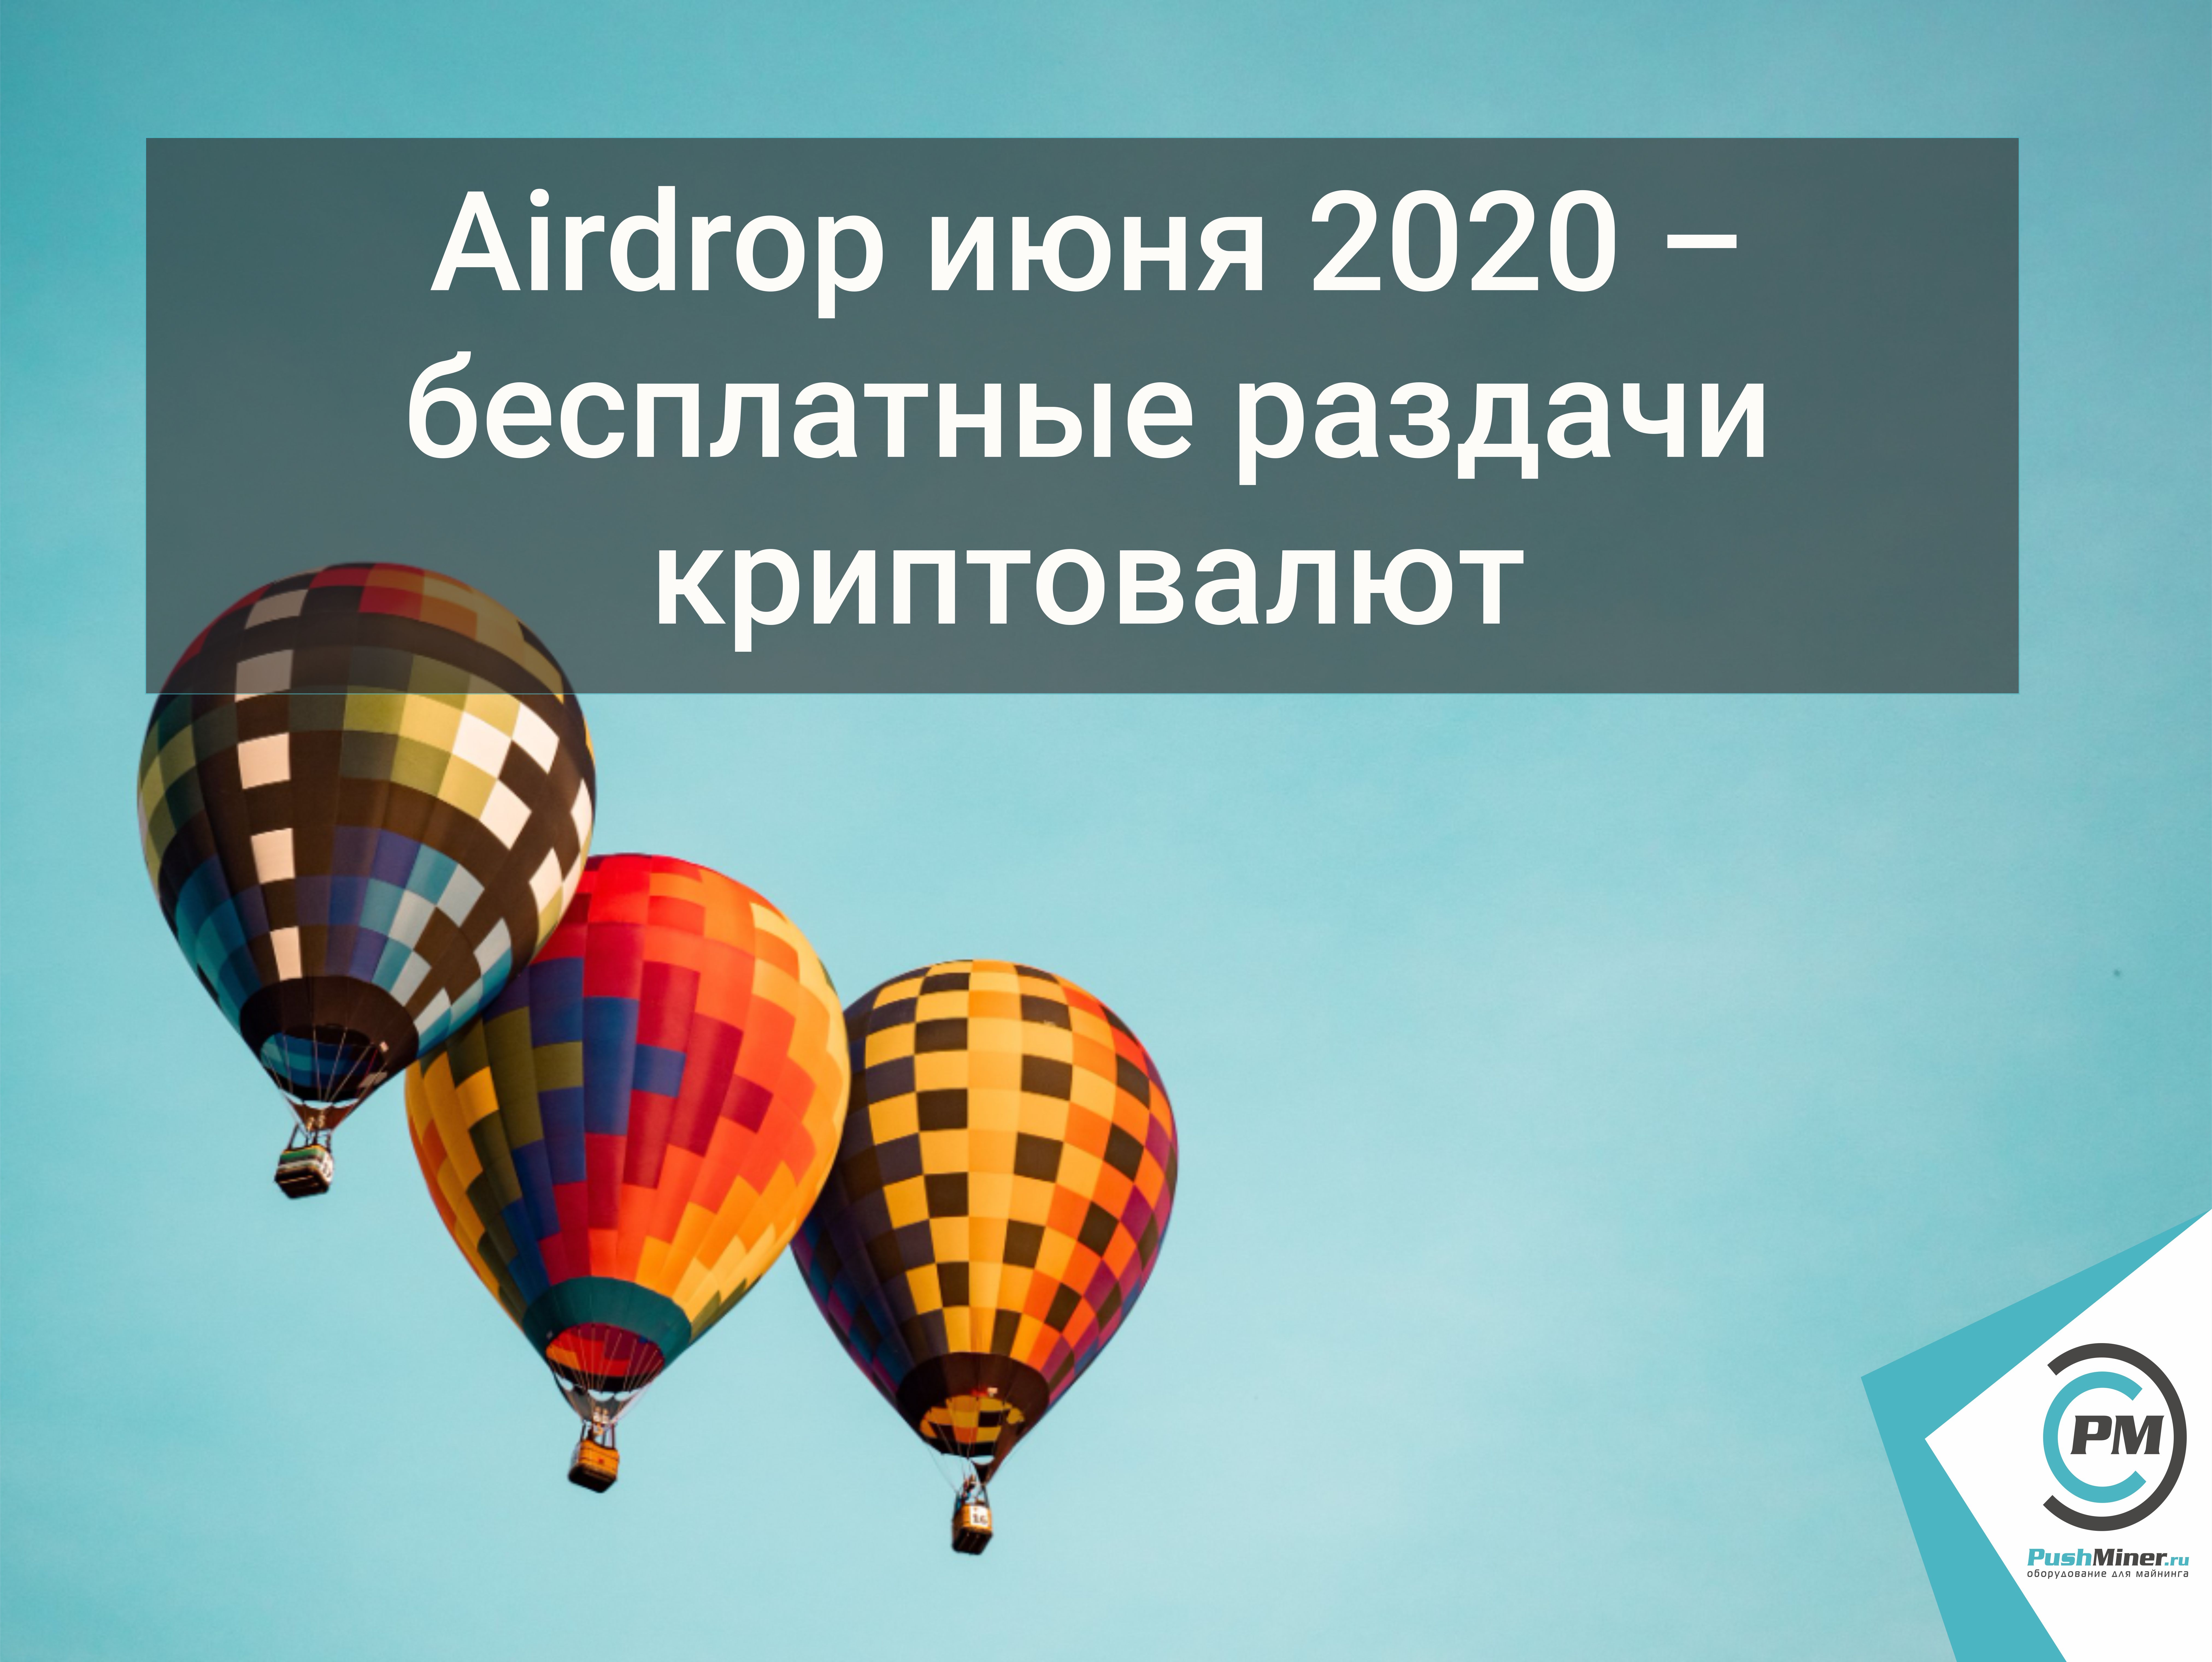   Airdrop июня 2020 – бесплатные раздачи криптовалю